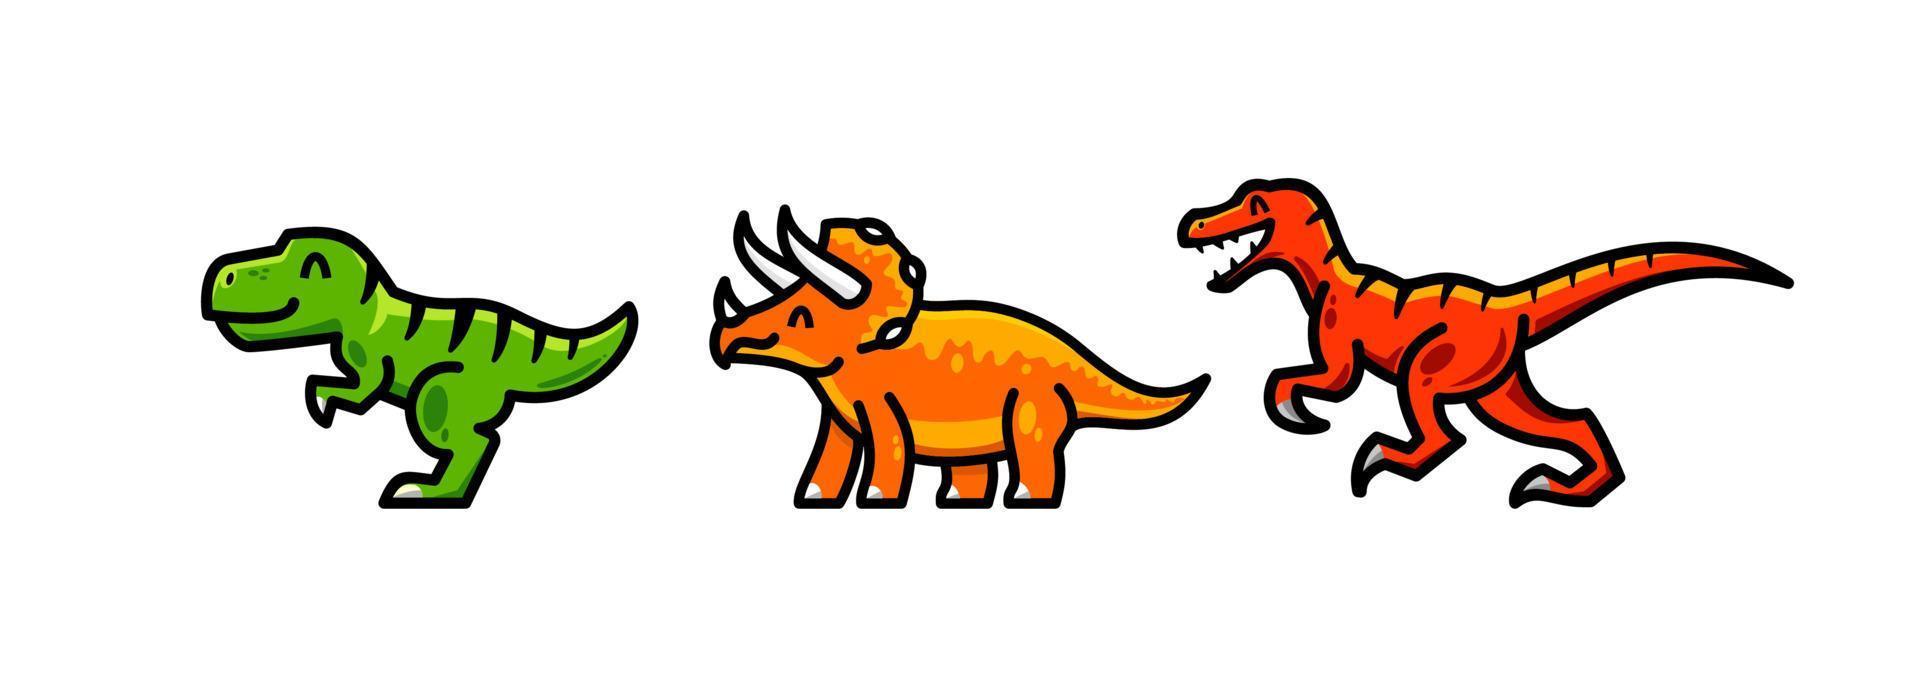 conjunto de dibujos animados de vector de dinosaurio. logotipo de la mascota t-rex, triceratops y raptor. colección de conjunto de mascota de vector de dibujos animados de dinosaurios. lindo diseño de logotipo de criatura antigua